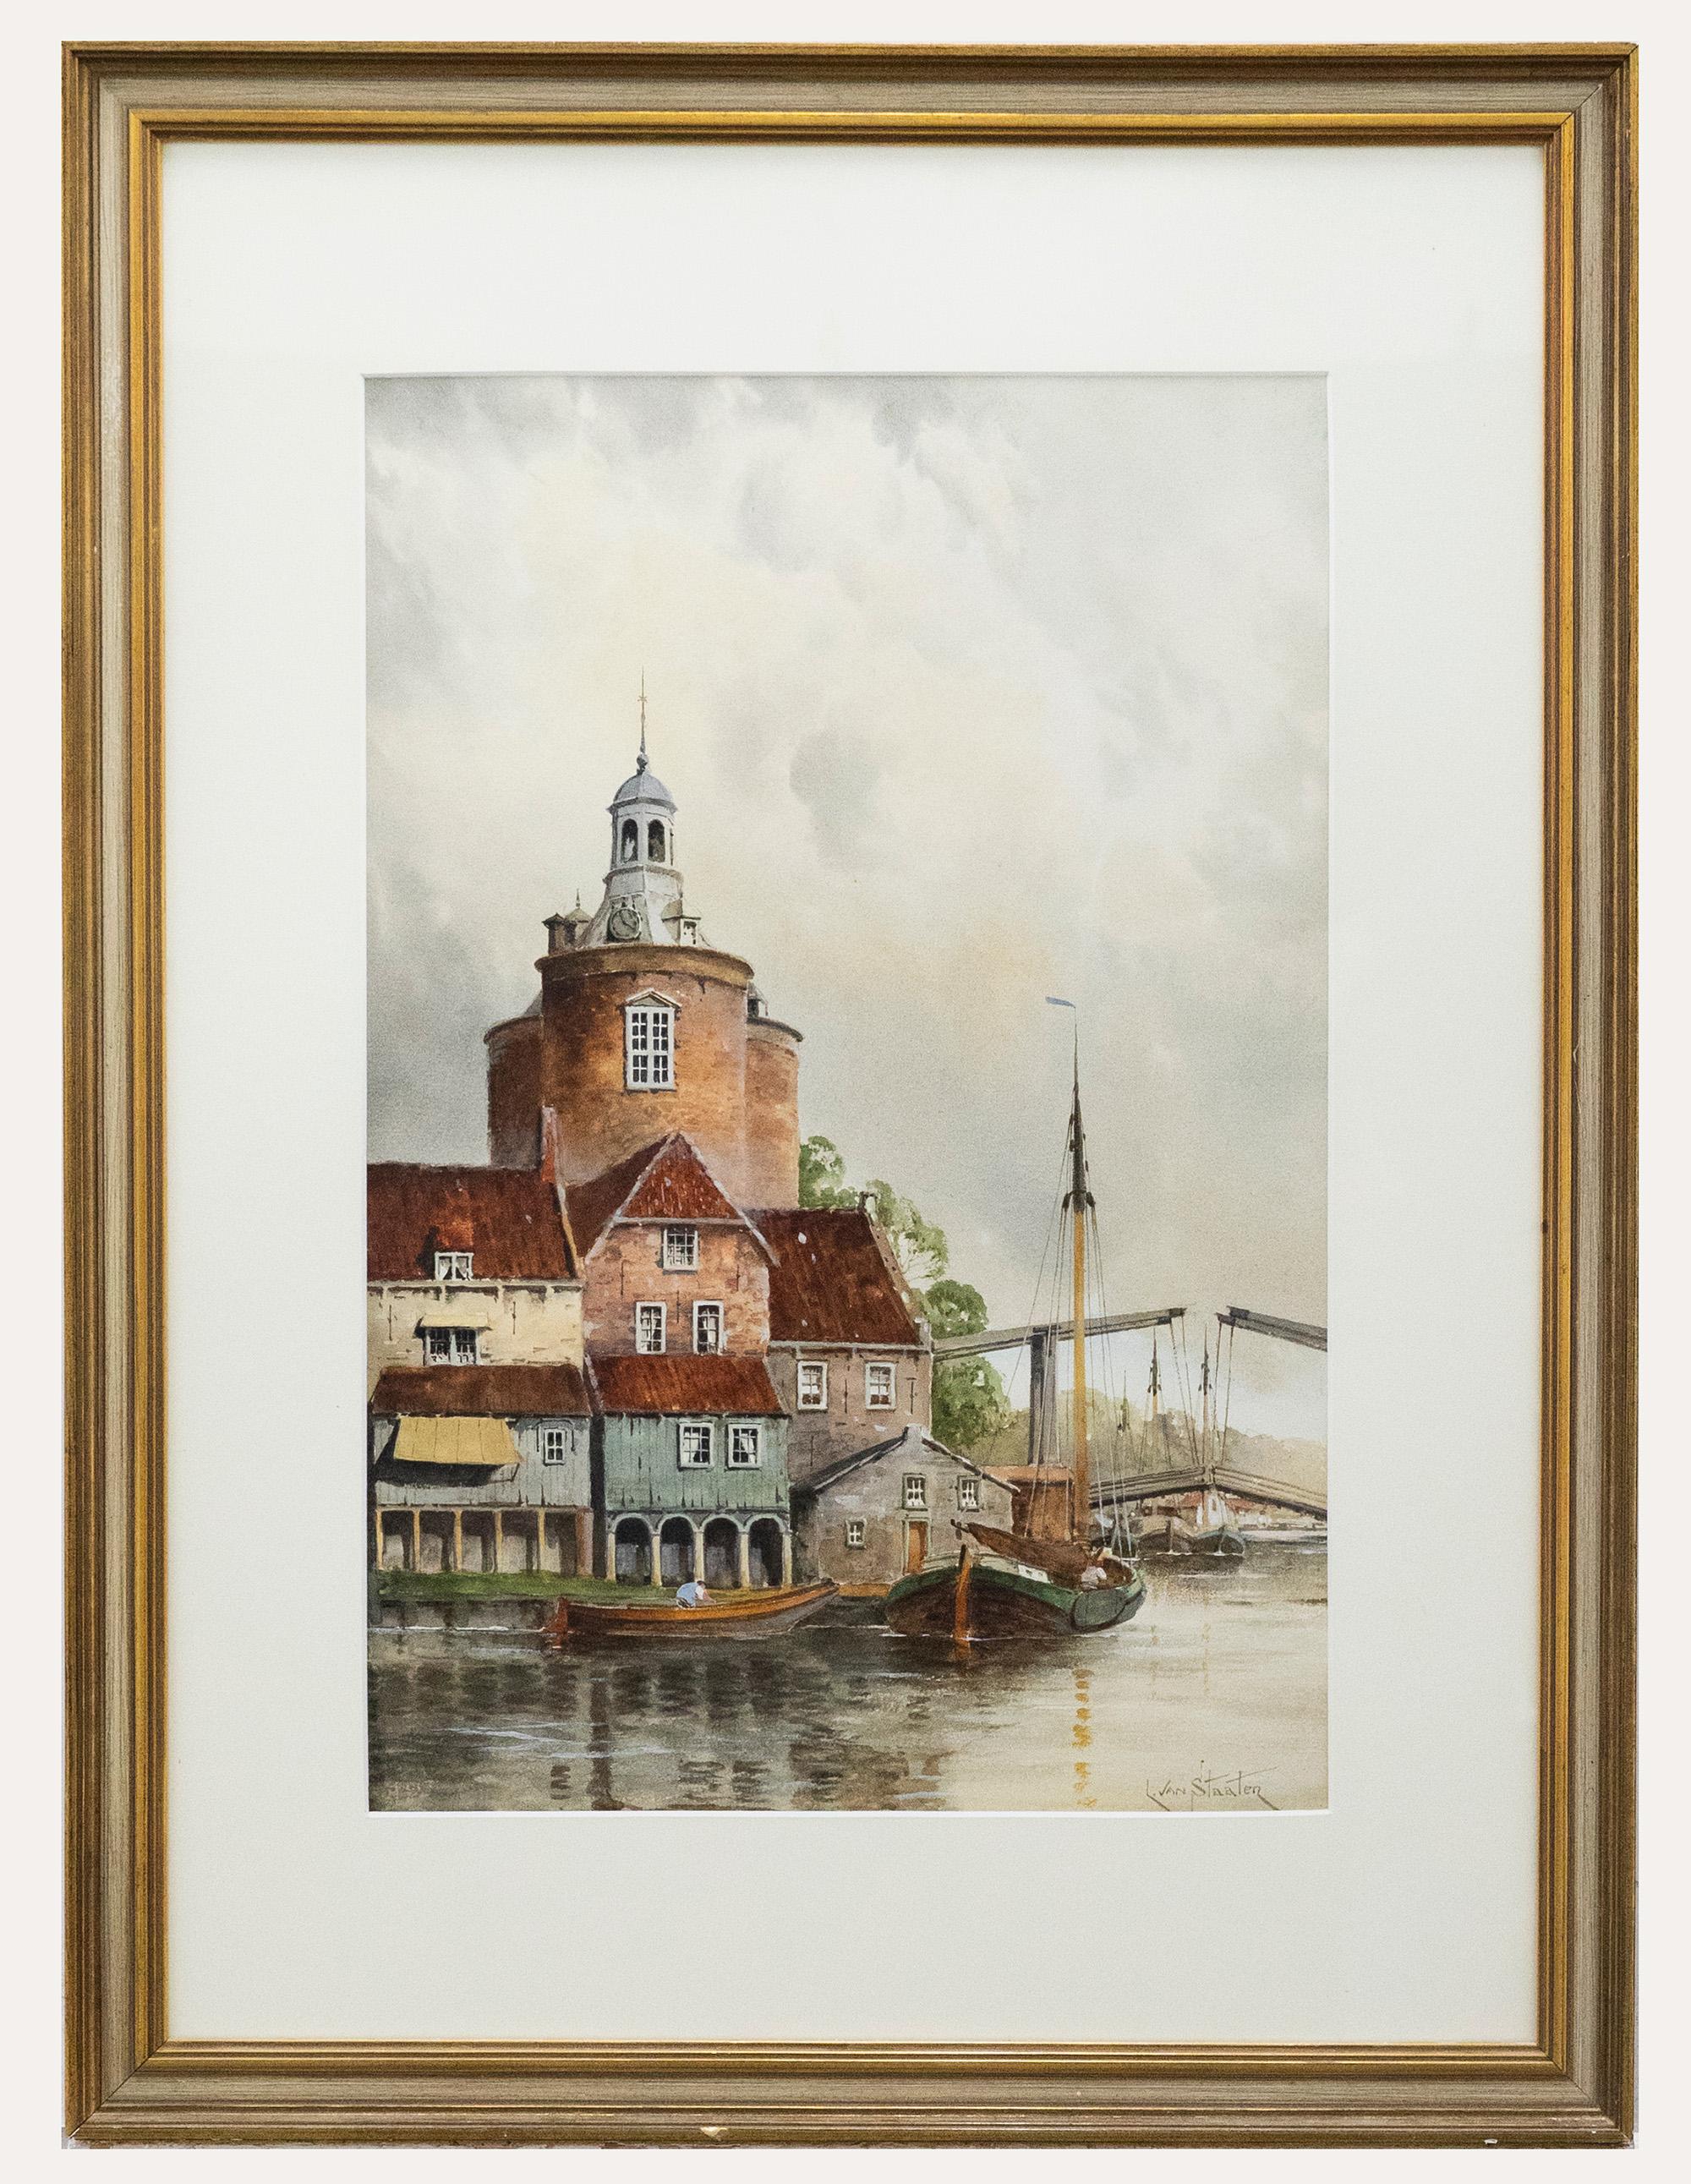 Eine bezaubernde Aquarellszene des bekannten niederländischen Künstlers Louis Van Staaten. Die Szene zeigt eine idyllische Flusslandschaft mit einer Zugbrücke im Hintergrund, die den Weg für zwei entgegenkommende Boote freigibt. Signiert unten